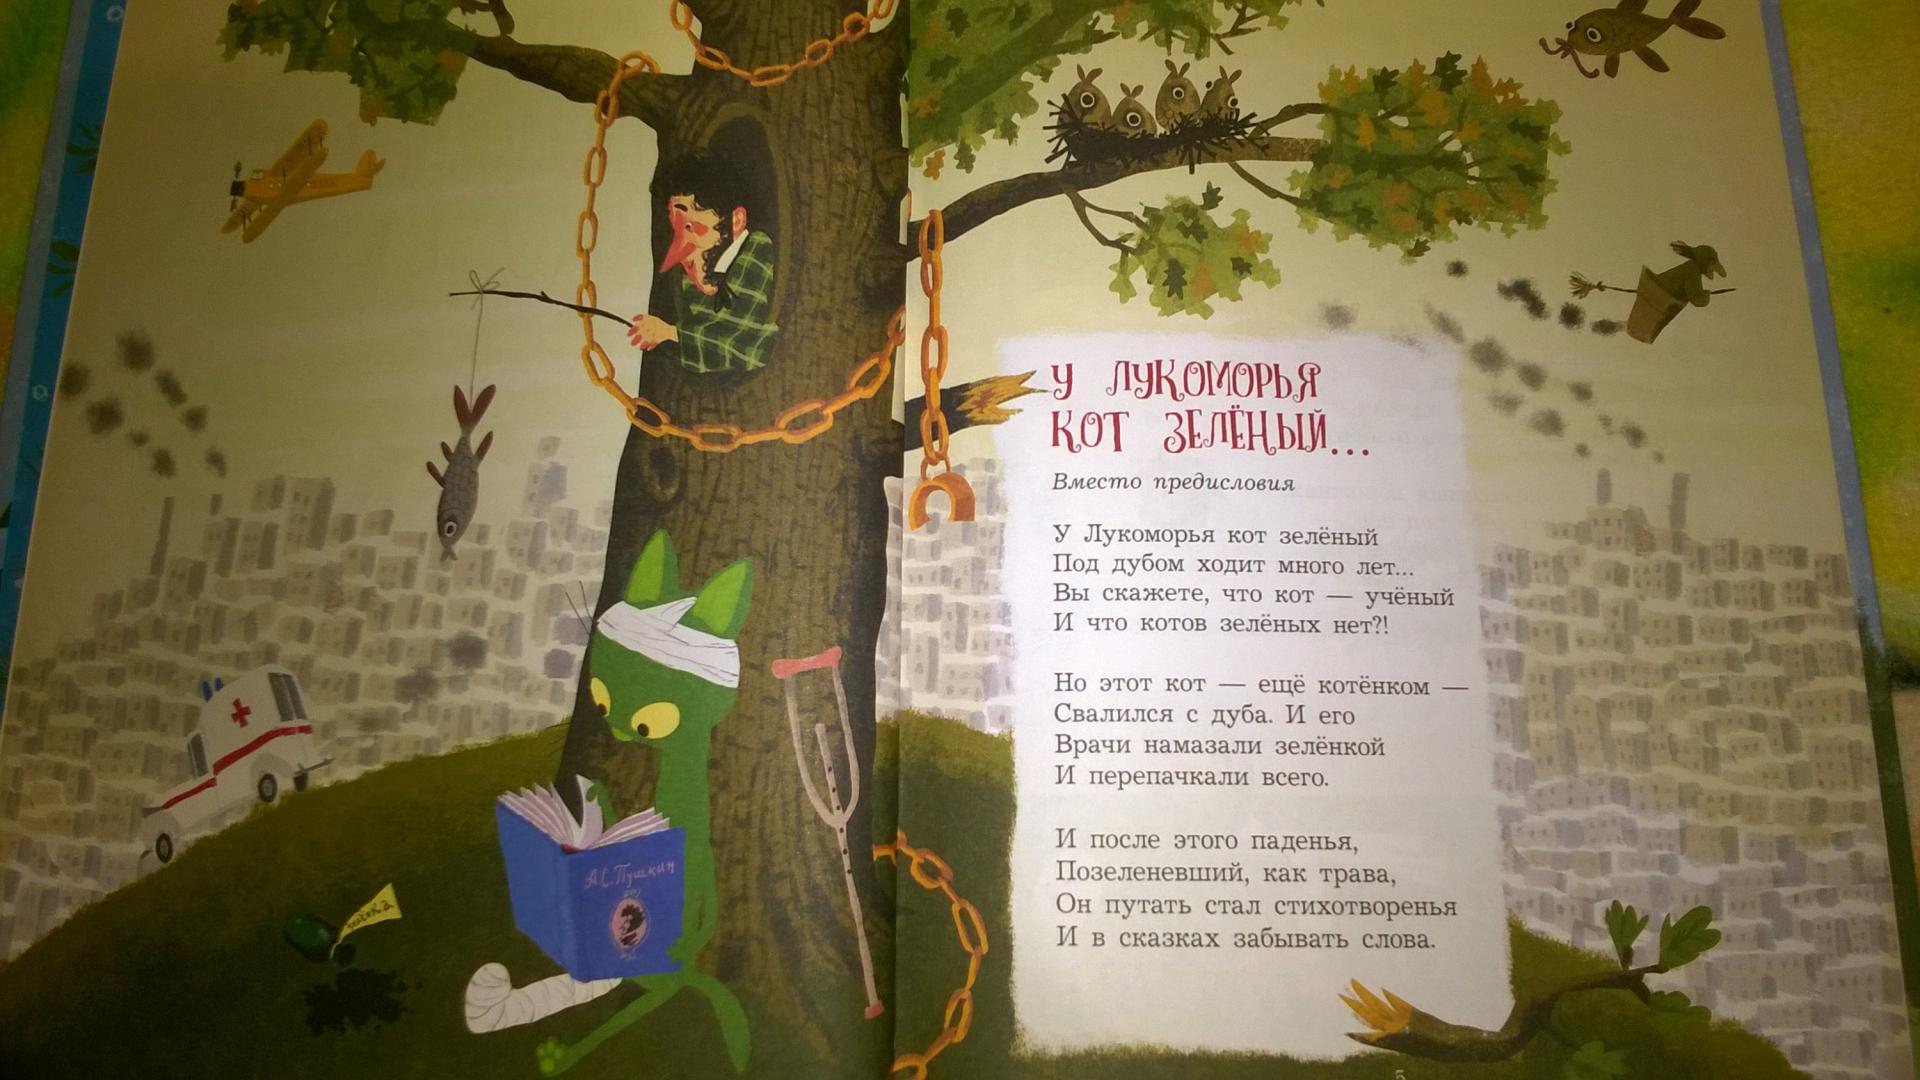 Неведомые дорожки стихи. Смешные стихи у Лукоморья дуб зеленый. У Лукоморья дуб спилили стихотворение. Переделаная версия у Лукоморье дуб зеленый. У Лукоморья дуб зеленый стихотворение.